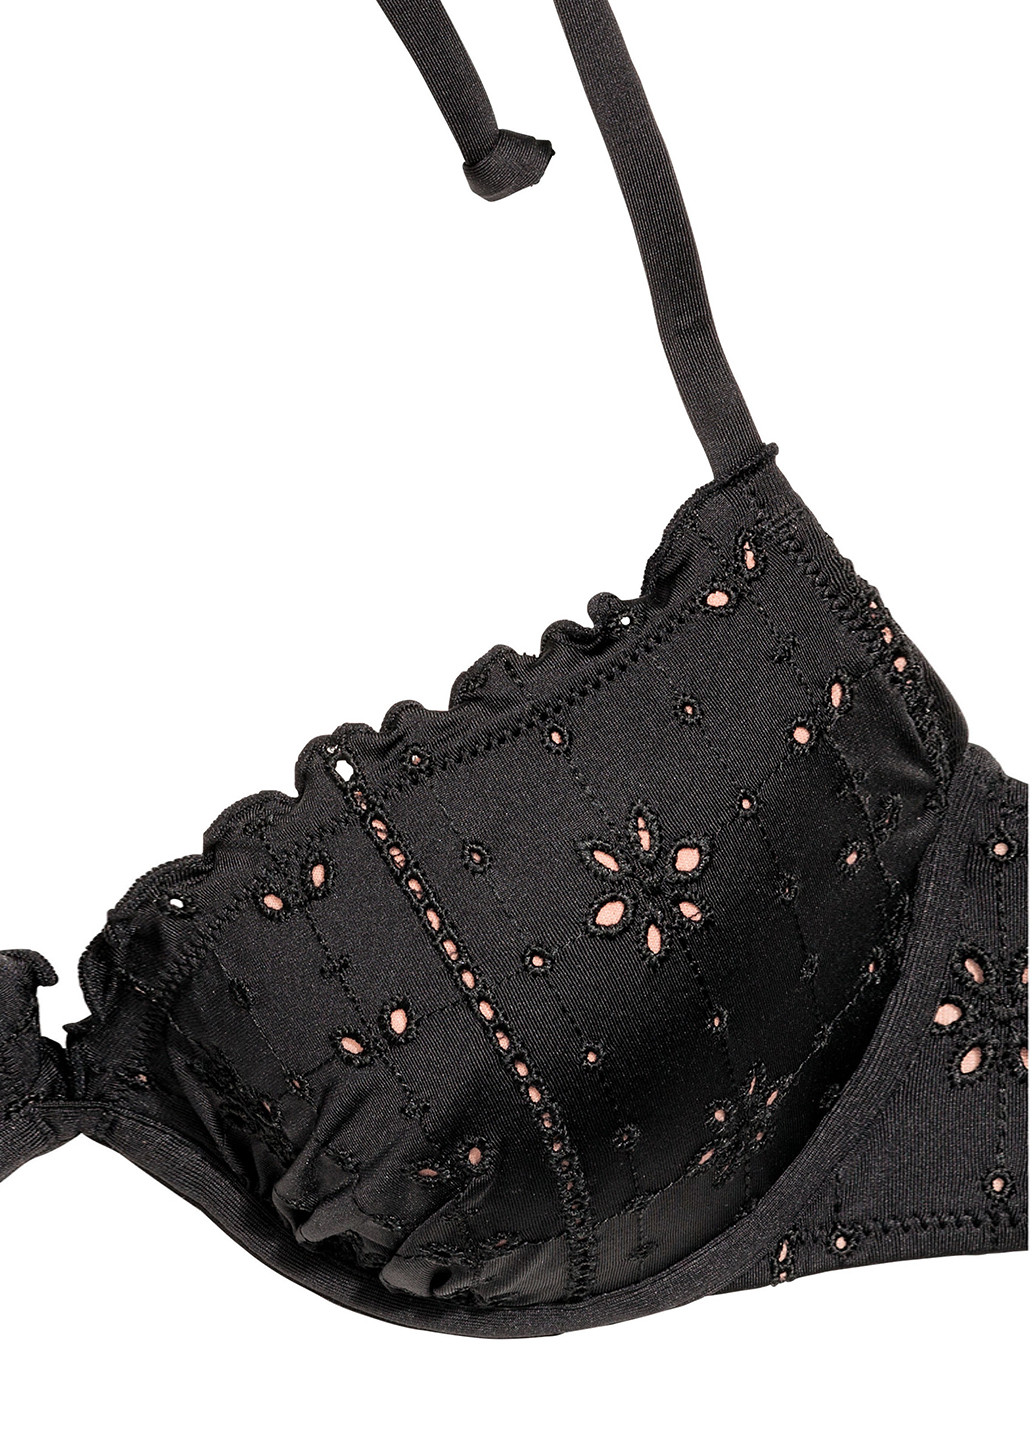 Купальный лиф H&M бикини однотонный чёрный пляжный полиэстер, трикотаж